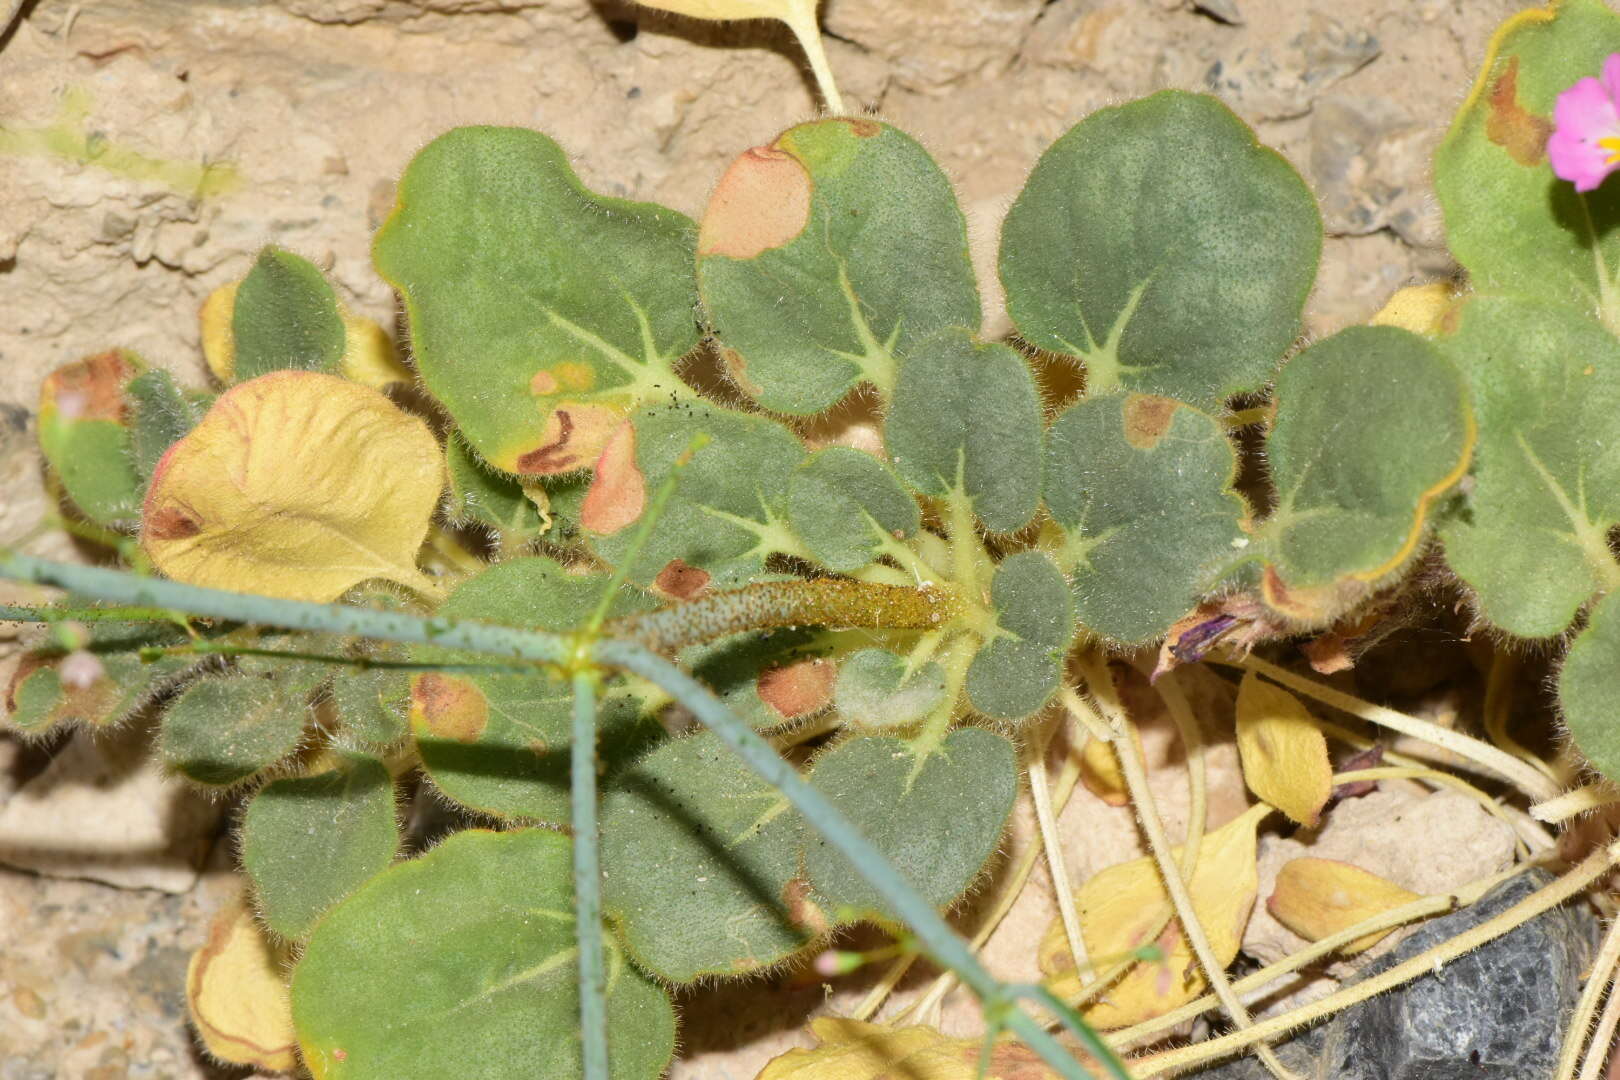 Image of acorn buckwheat